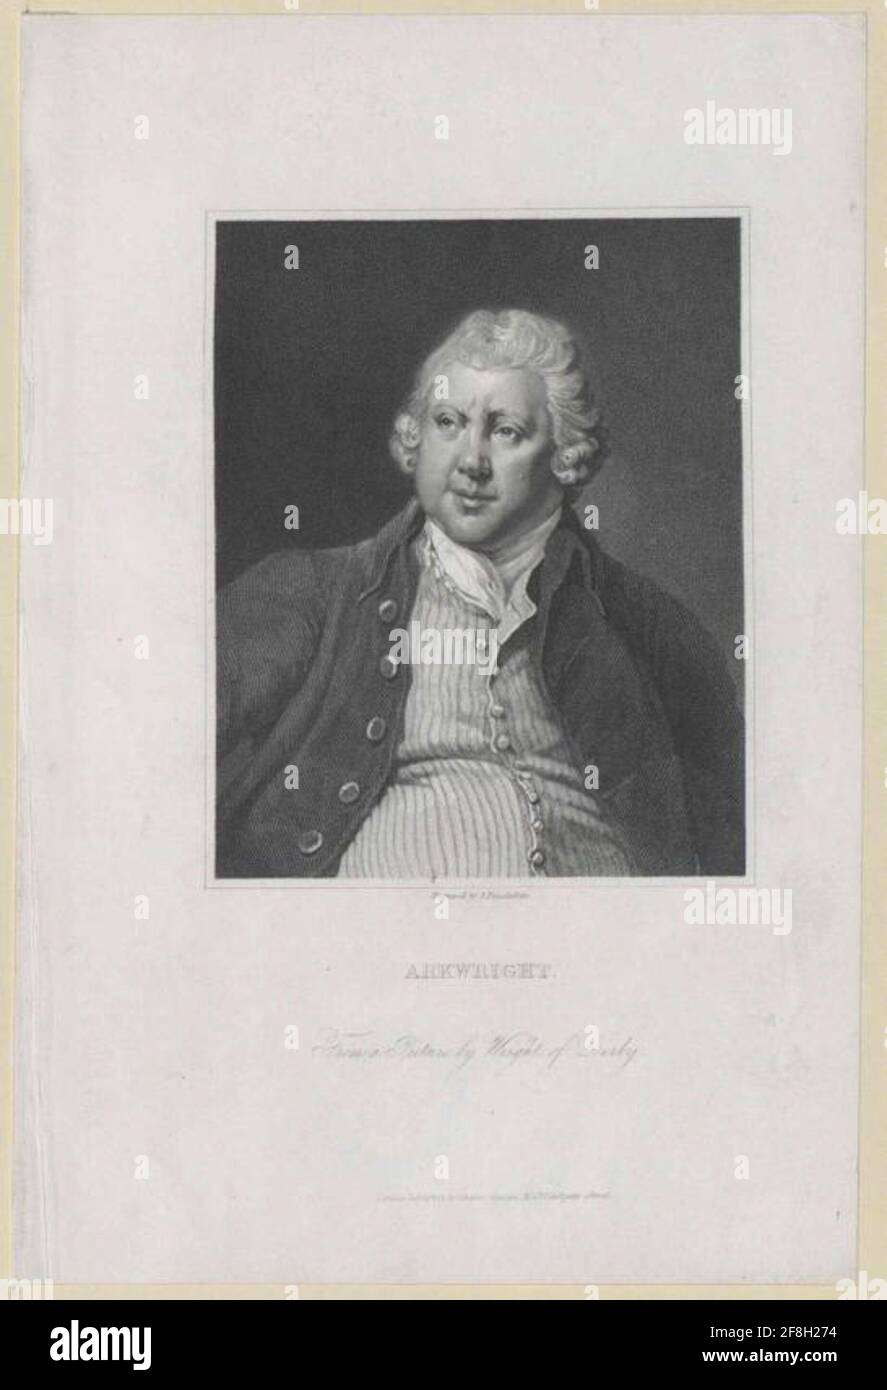 Arkwright, Richard Stecher: PosSelwhite, James Verlag: Charles Knight Dating: 1820/1840 Stockfoto